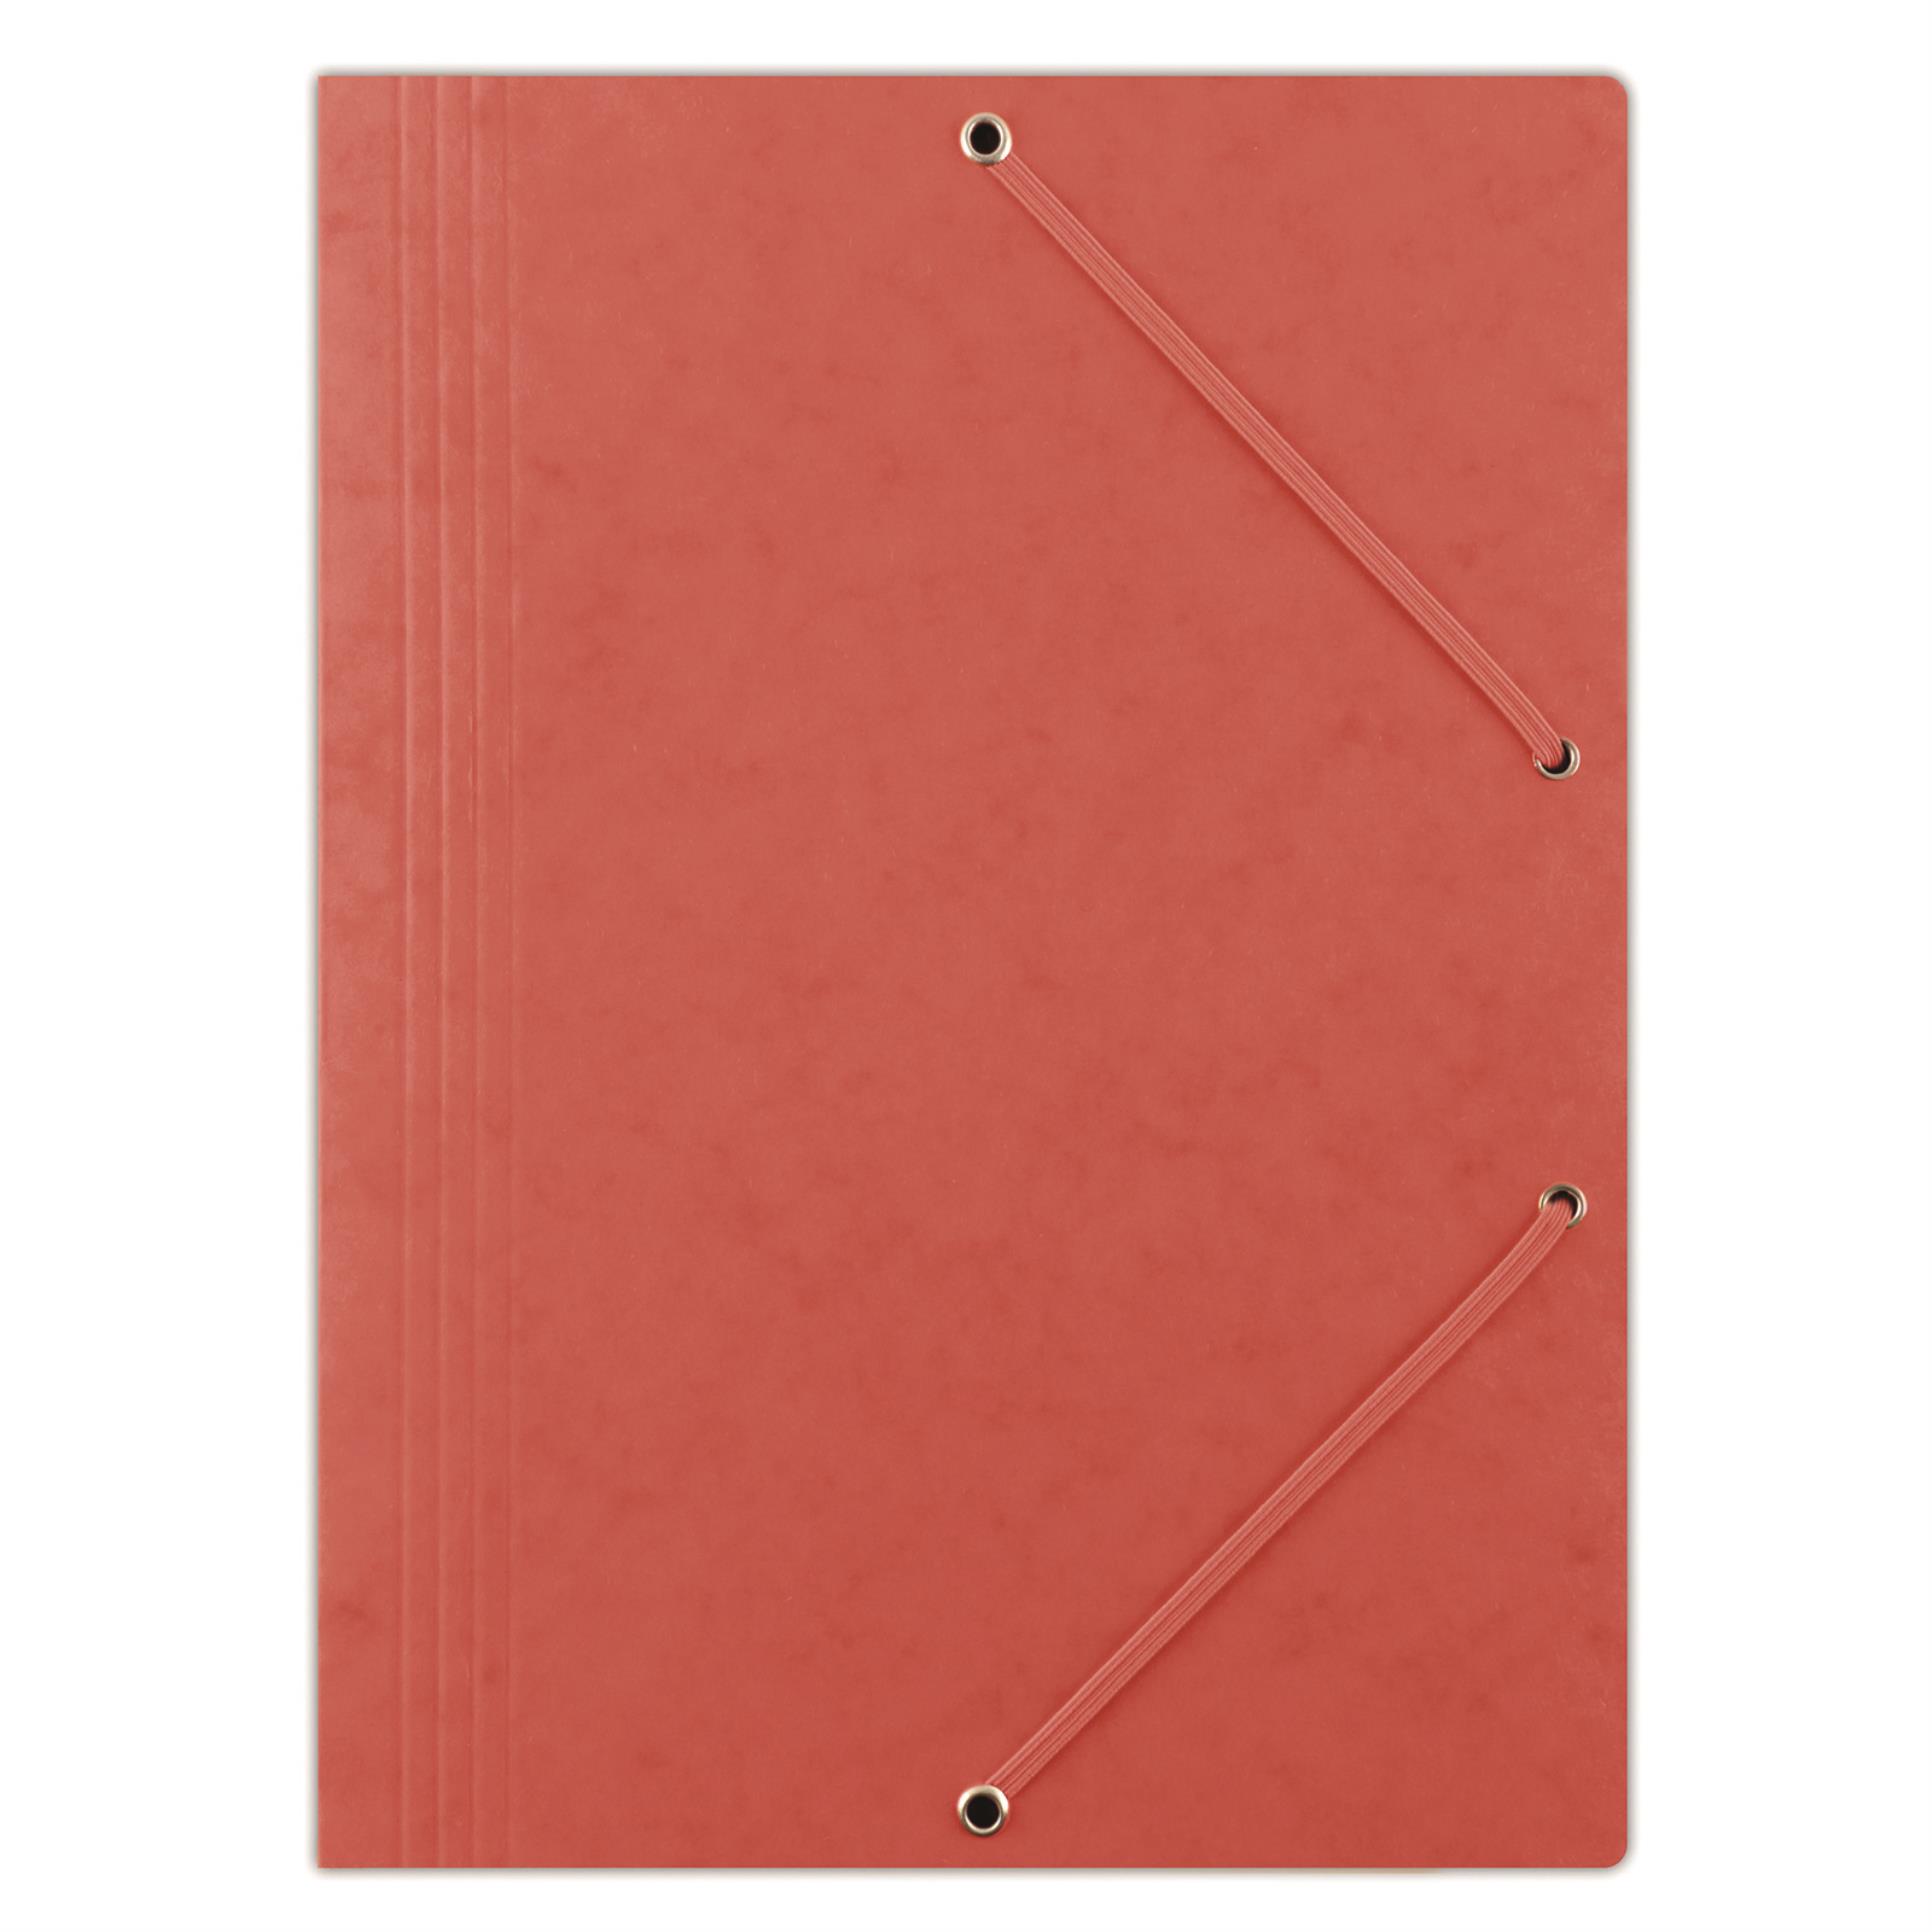 Prešpánové desky s chlopněmi a gumičkou Donau - A4, červené, 1 ks